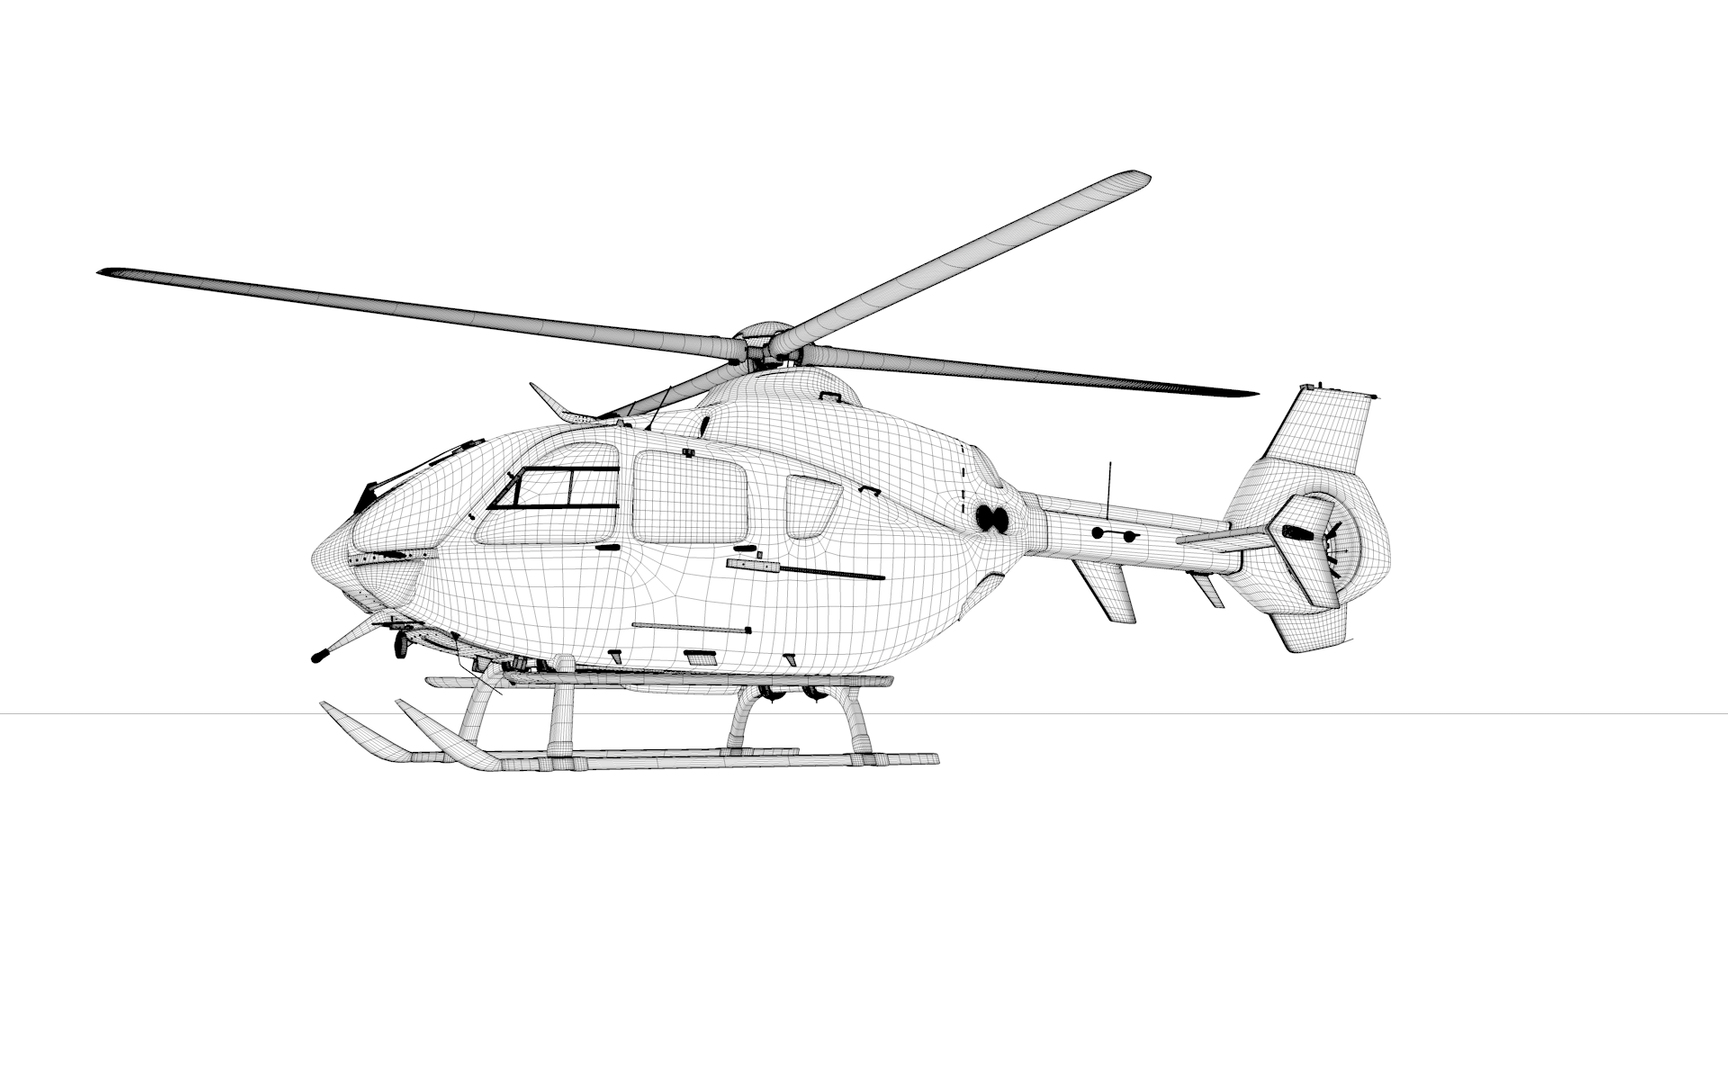 Eurocopter EC-135 SWISS AIR FORCE L1987 3D https://p.turbosquid.com/ts-thumb/Bi/R32ura/7q/0000/png/1683414116/1920x1080/turn_fit_q99/48e22c41d0ca52a176185a23cc4d79ca1d722a1a/0000-1.jpg